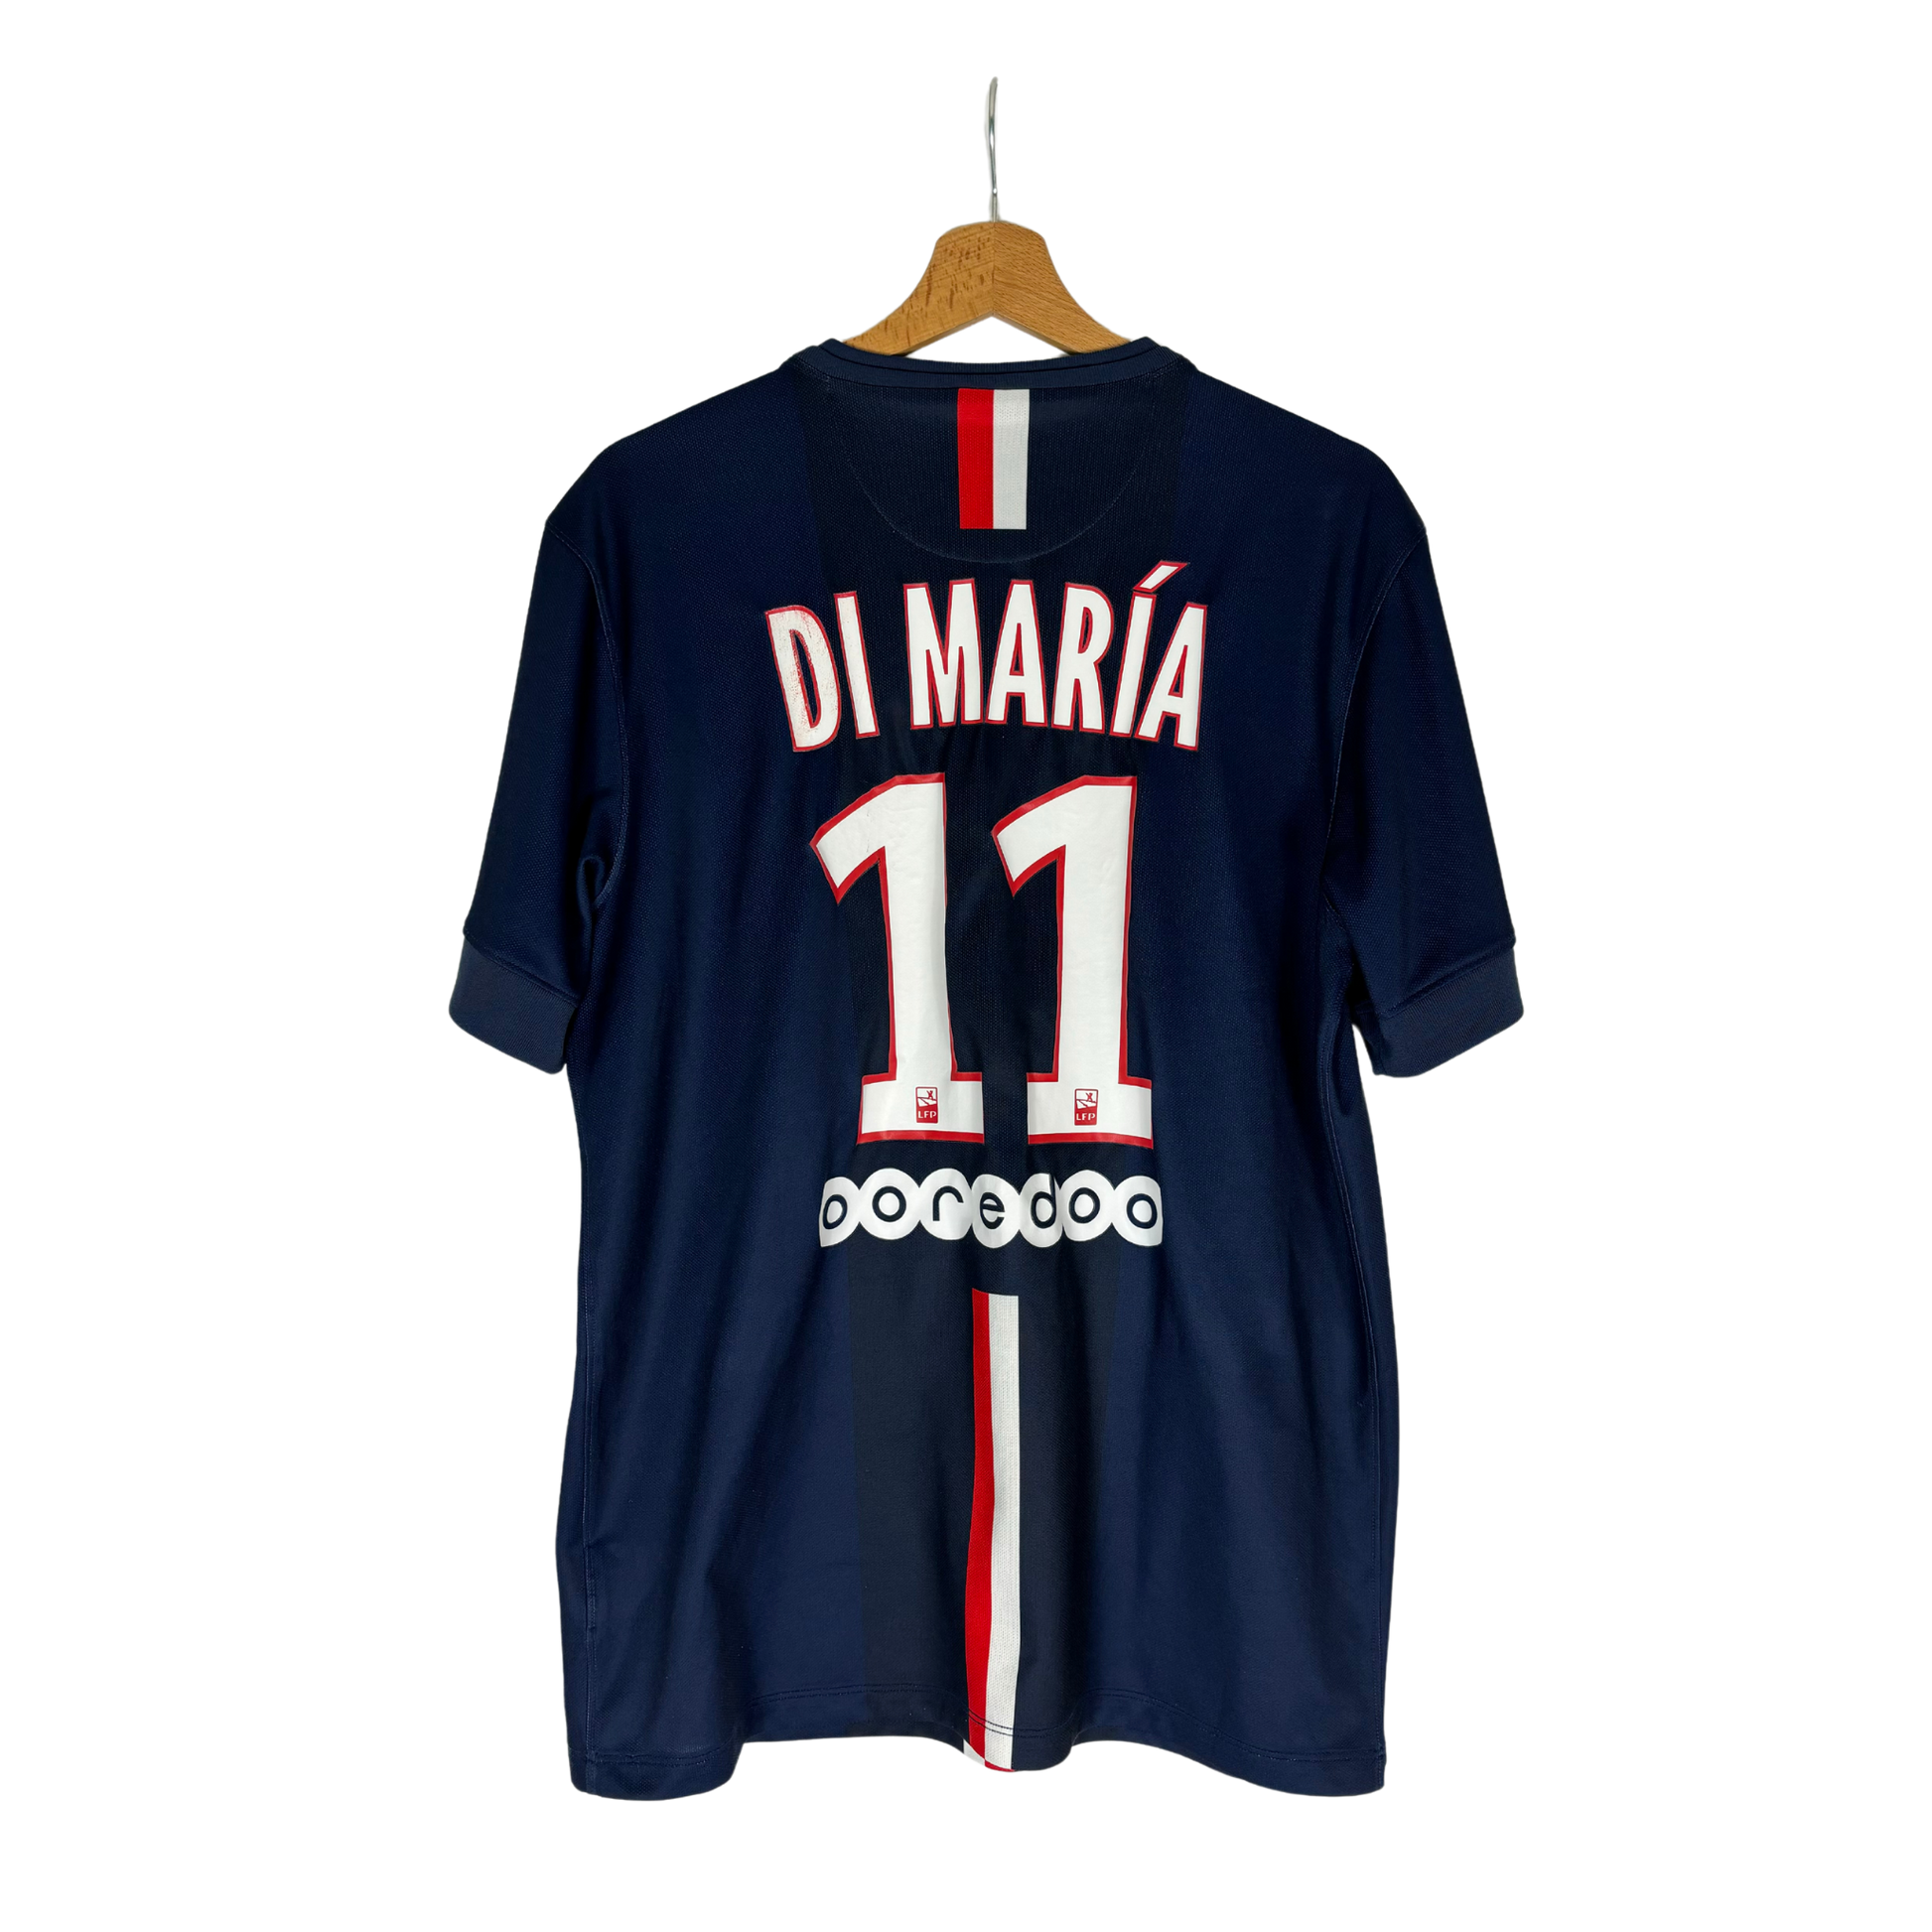 Classic Football Shirt Paris Saint-Germain season 2014-2015 - Di Maria at Innofoot